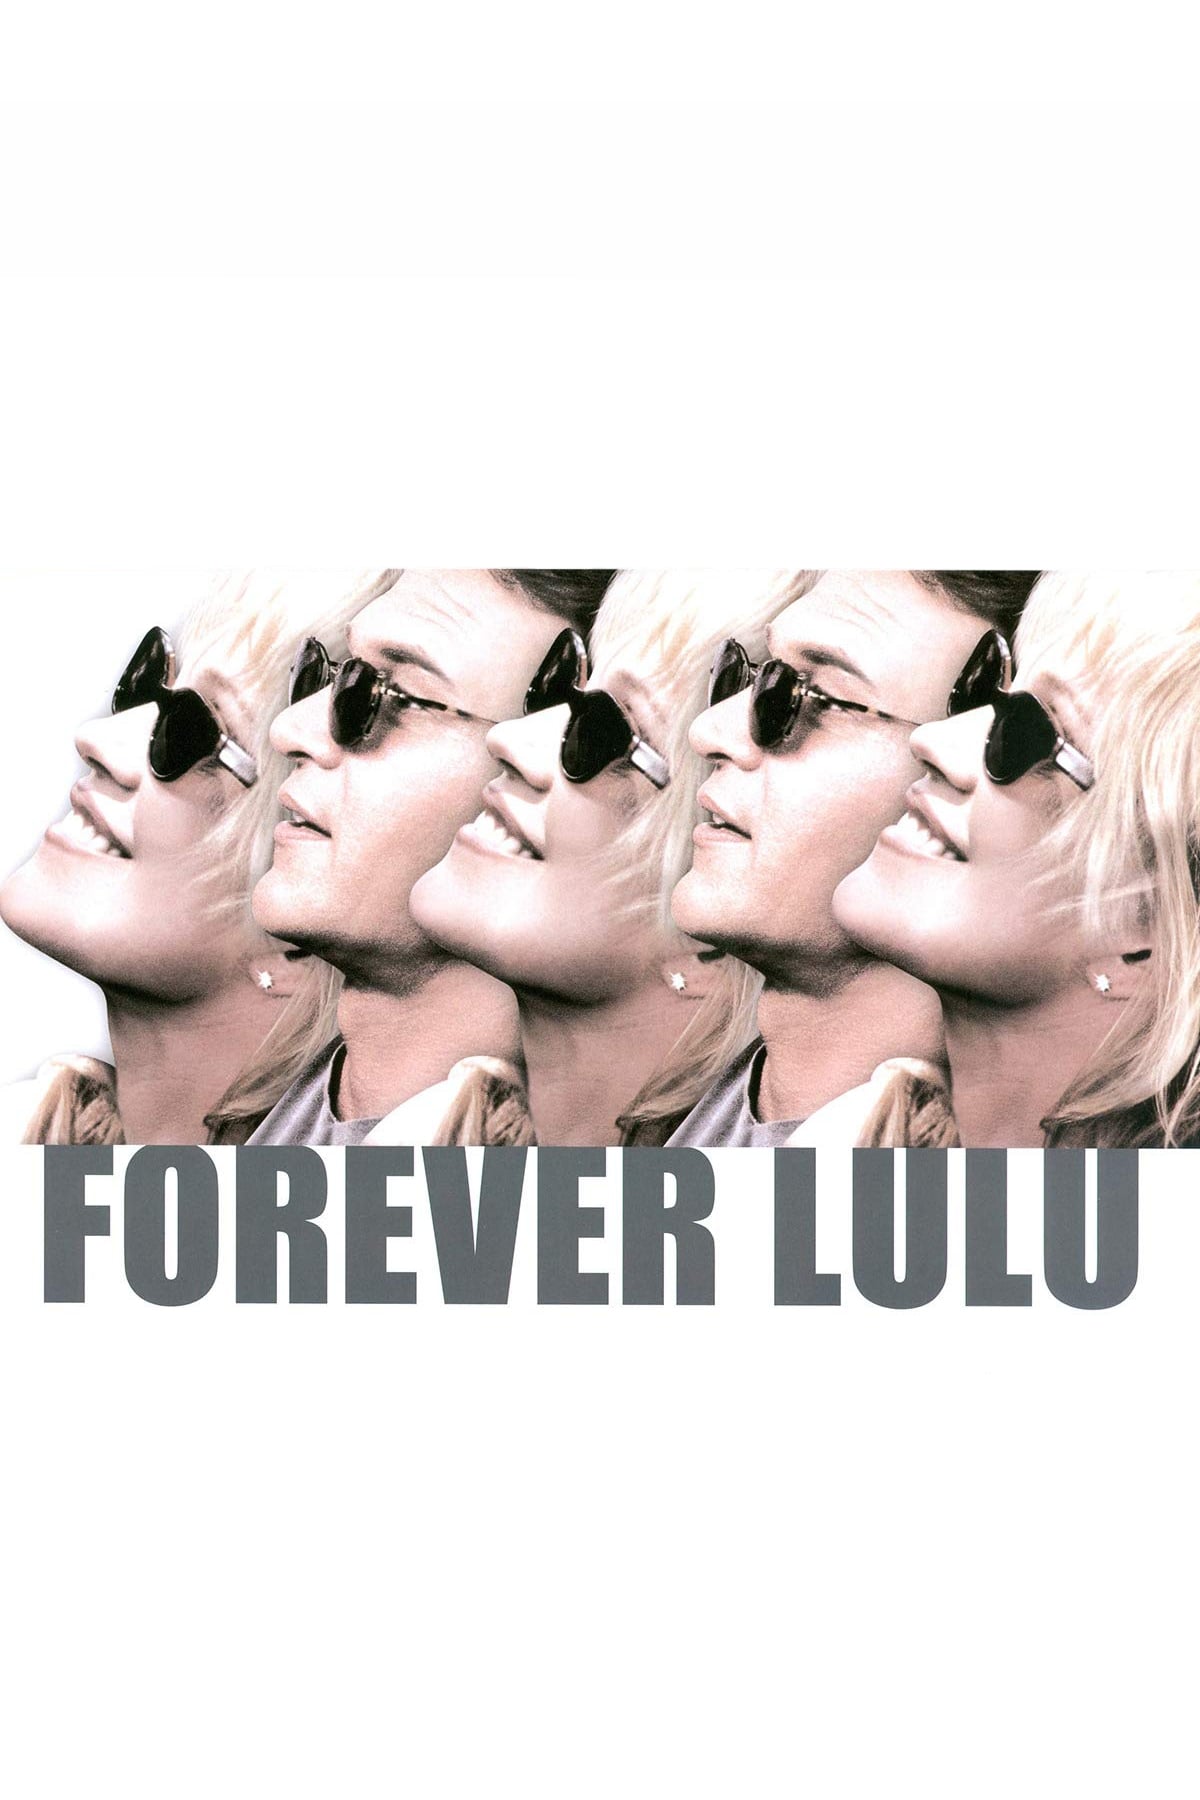 Forever Lulu (2000)